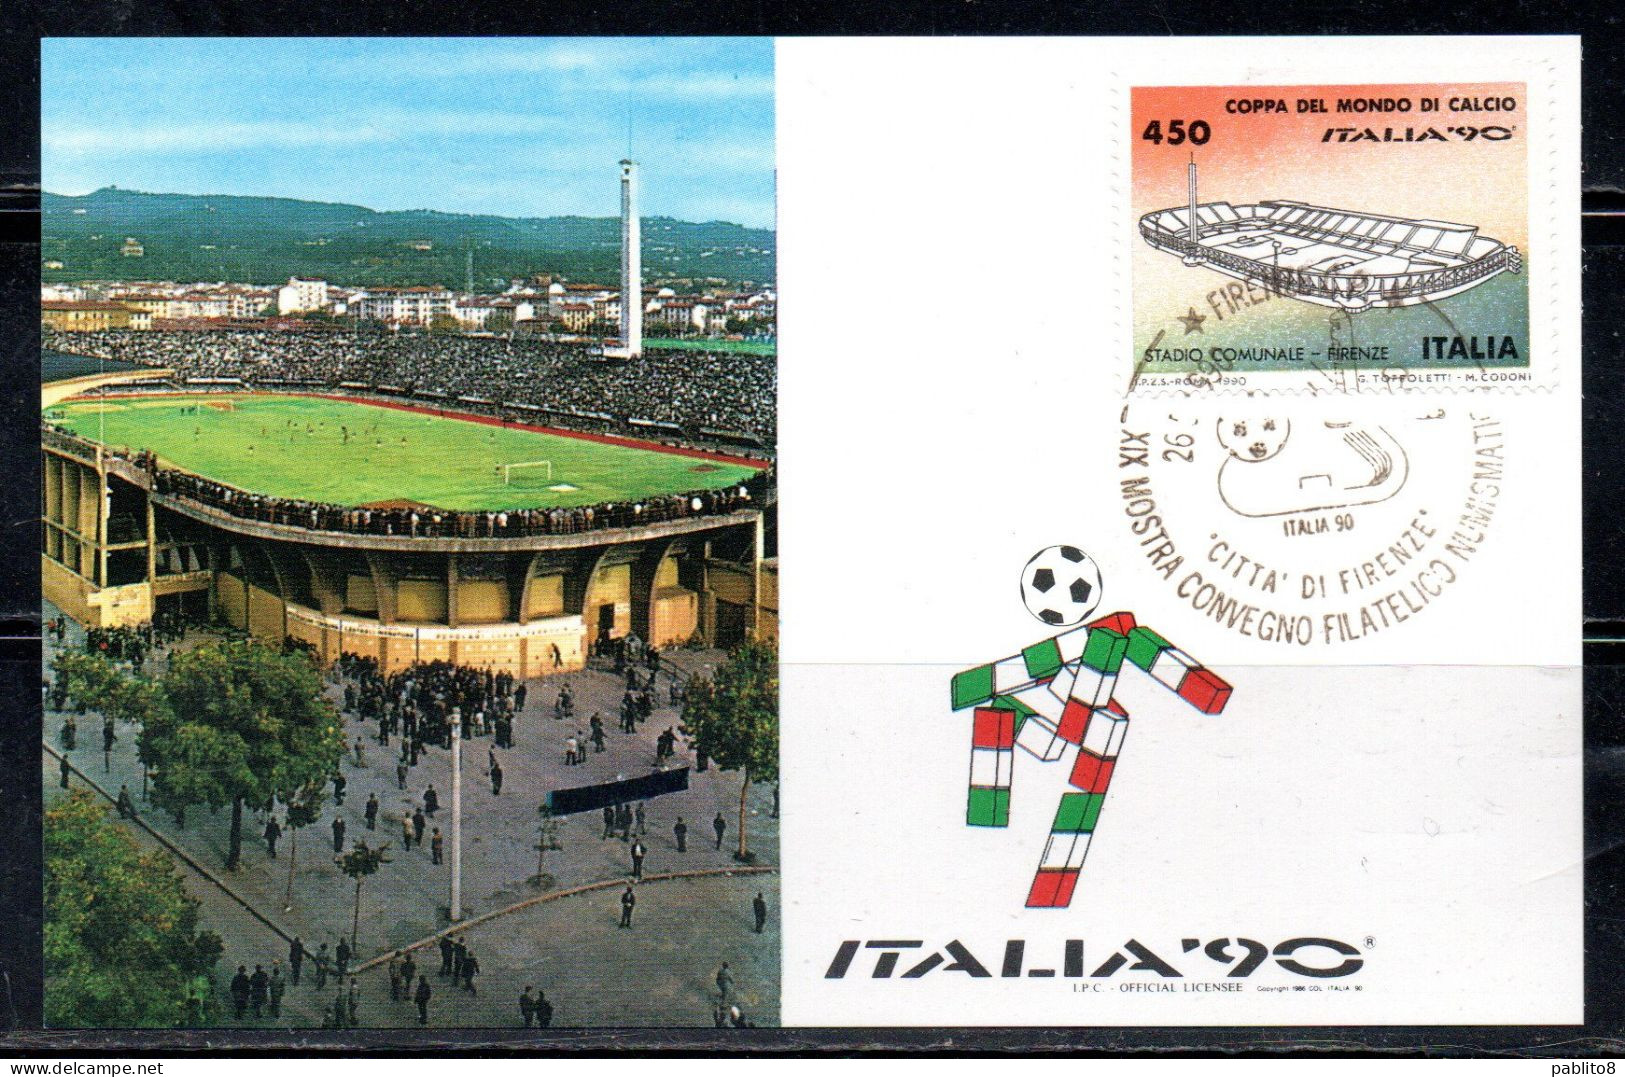 ITALIA 90 REPUBBLICA ITALY REPUBLIC 1990 COPPA DEL MONDO DI CALCIO STADIO COMUNALE FI L. 450 MAXI MAXIMUM CARD CARTOLINA - Maximum Cards